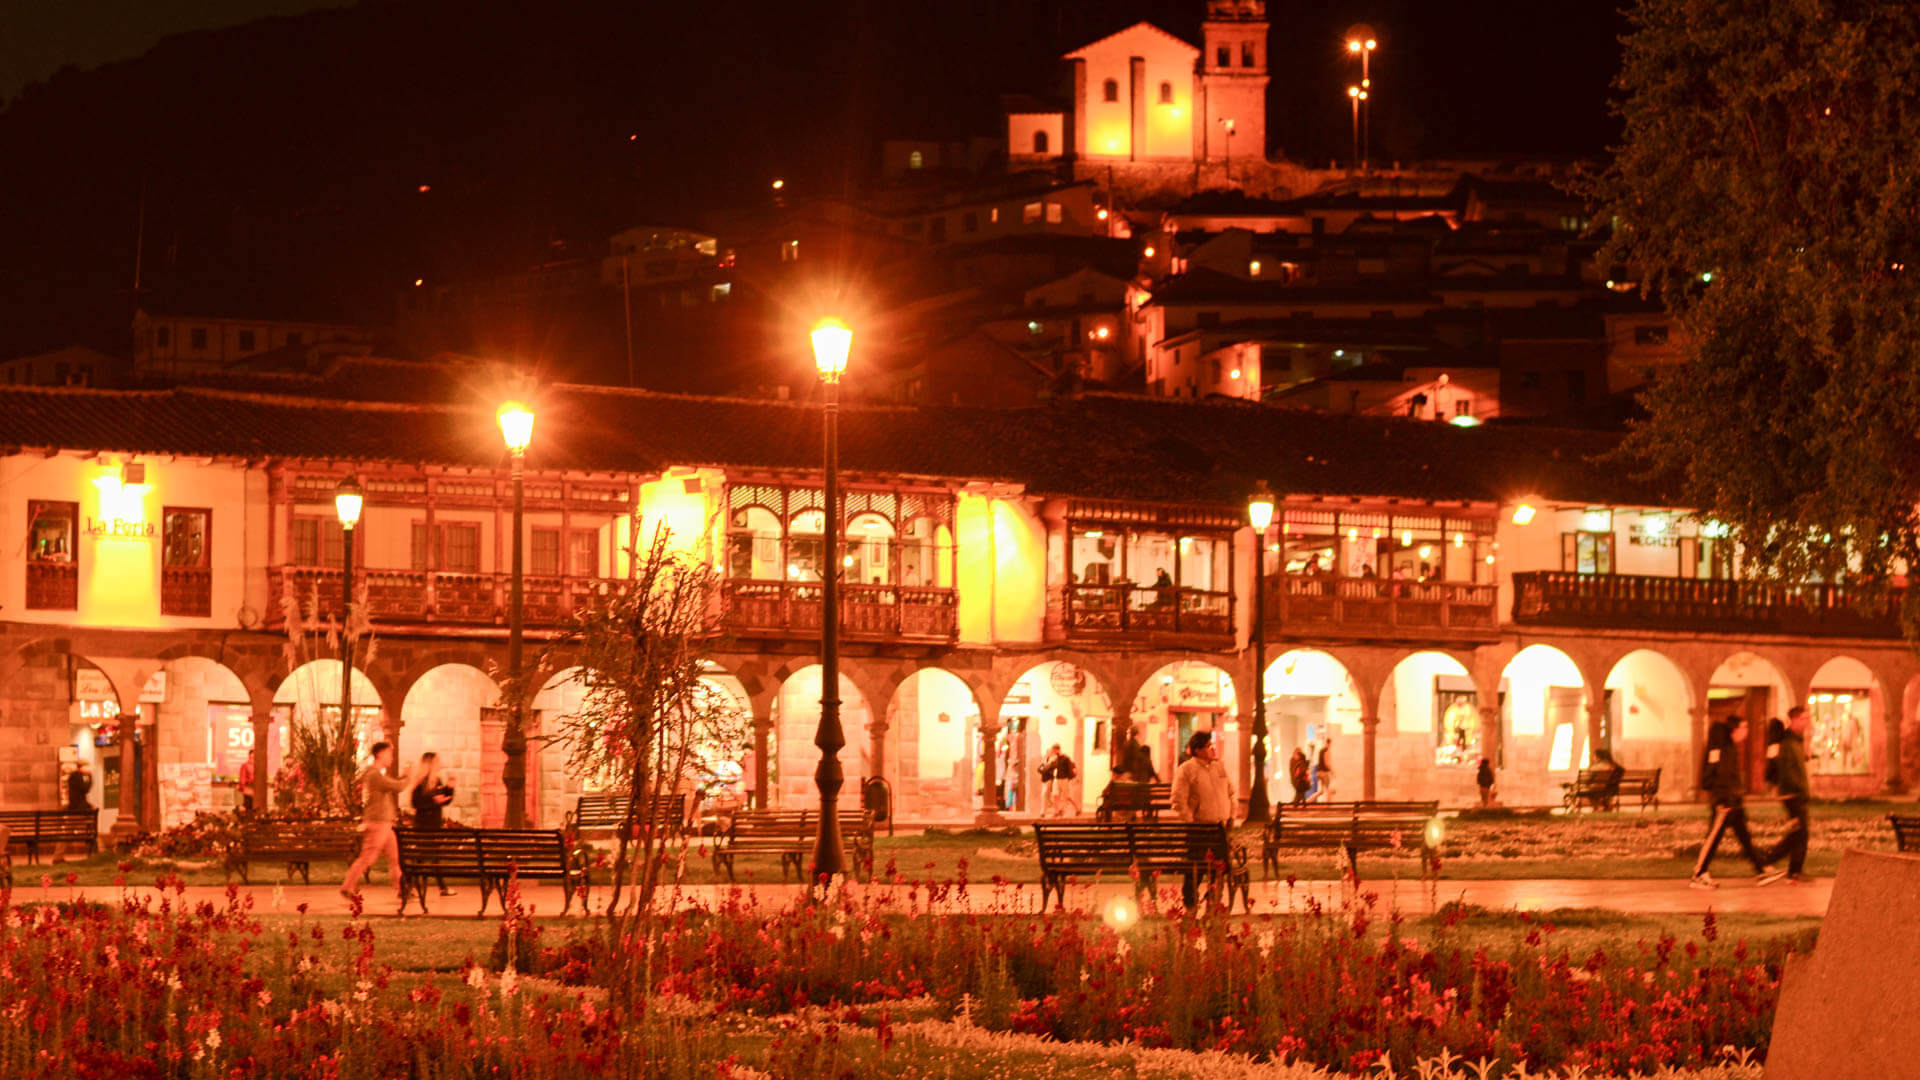 Plaza de Armas at night in Cusco, Peru